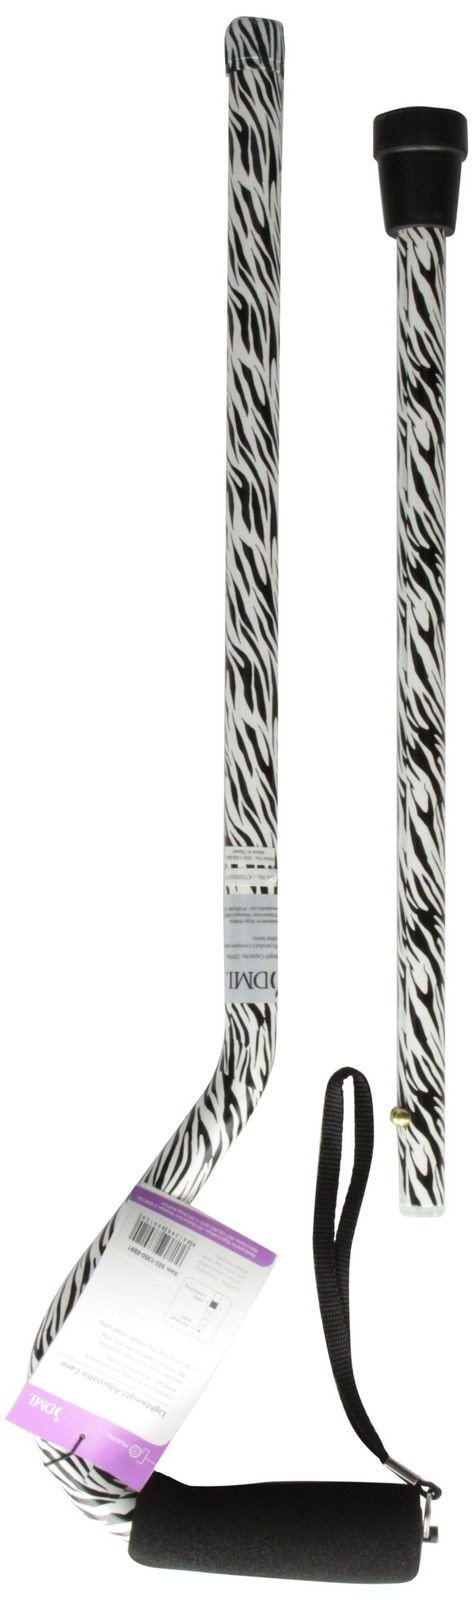 Dmi Adjustable Designer Cane With Offset Handle Comfort Grip And Strap Zebra - $22.95